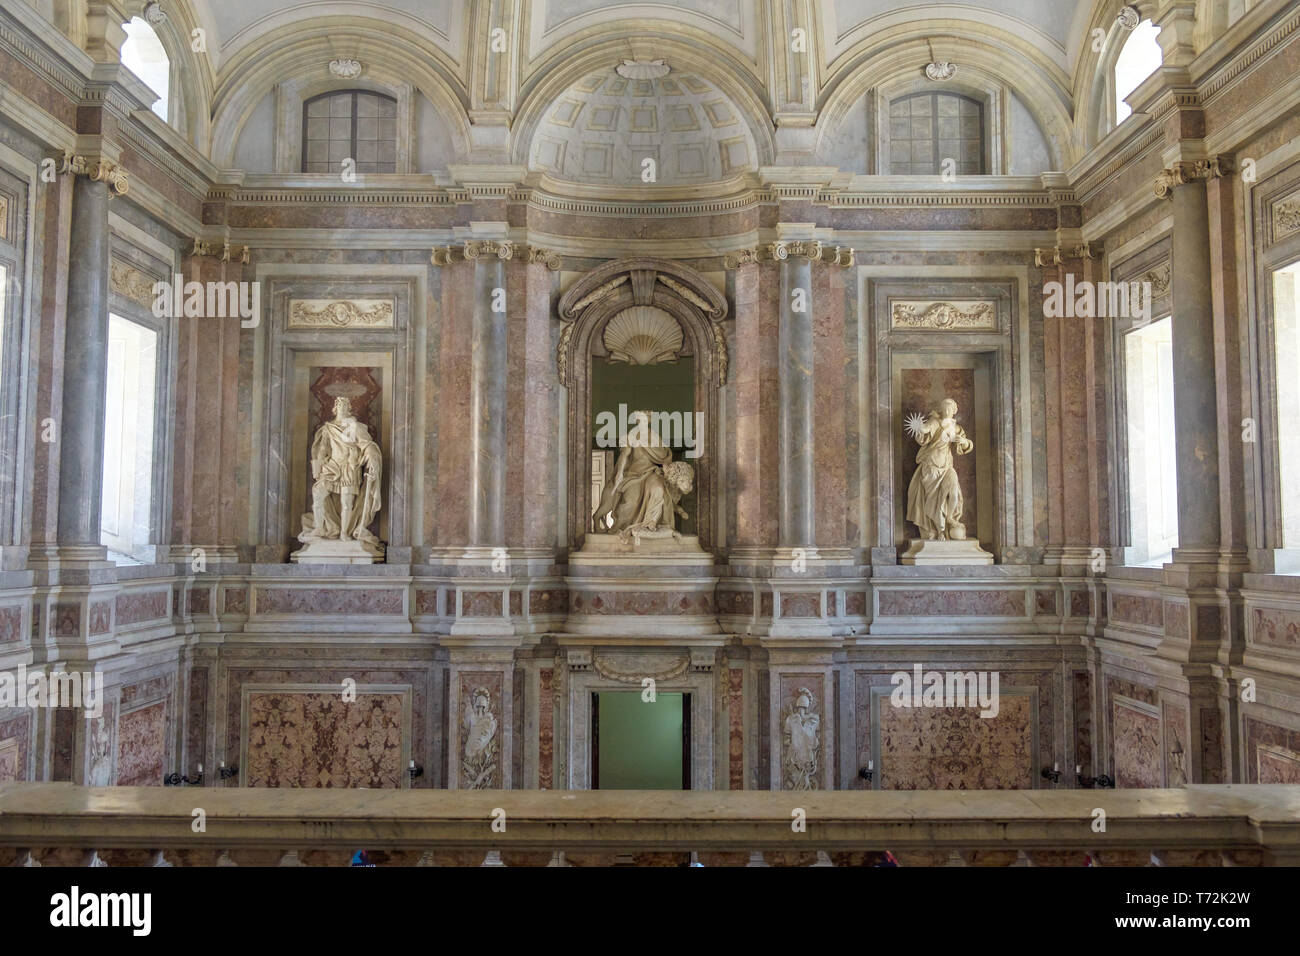 Quando si gira intorno al di sopra lo Scalone monumentale della Reggia di Caserta puoi vedere tre enormi statue che rappresentano il merito, la maestà regale e la verità. Foto Stock